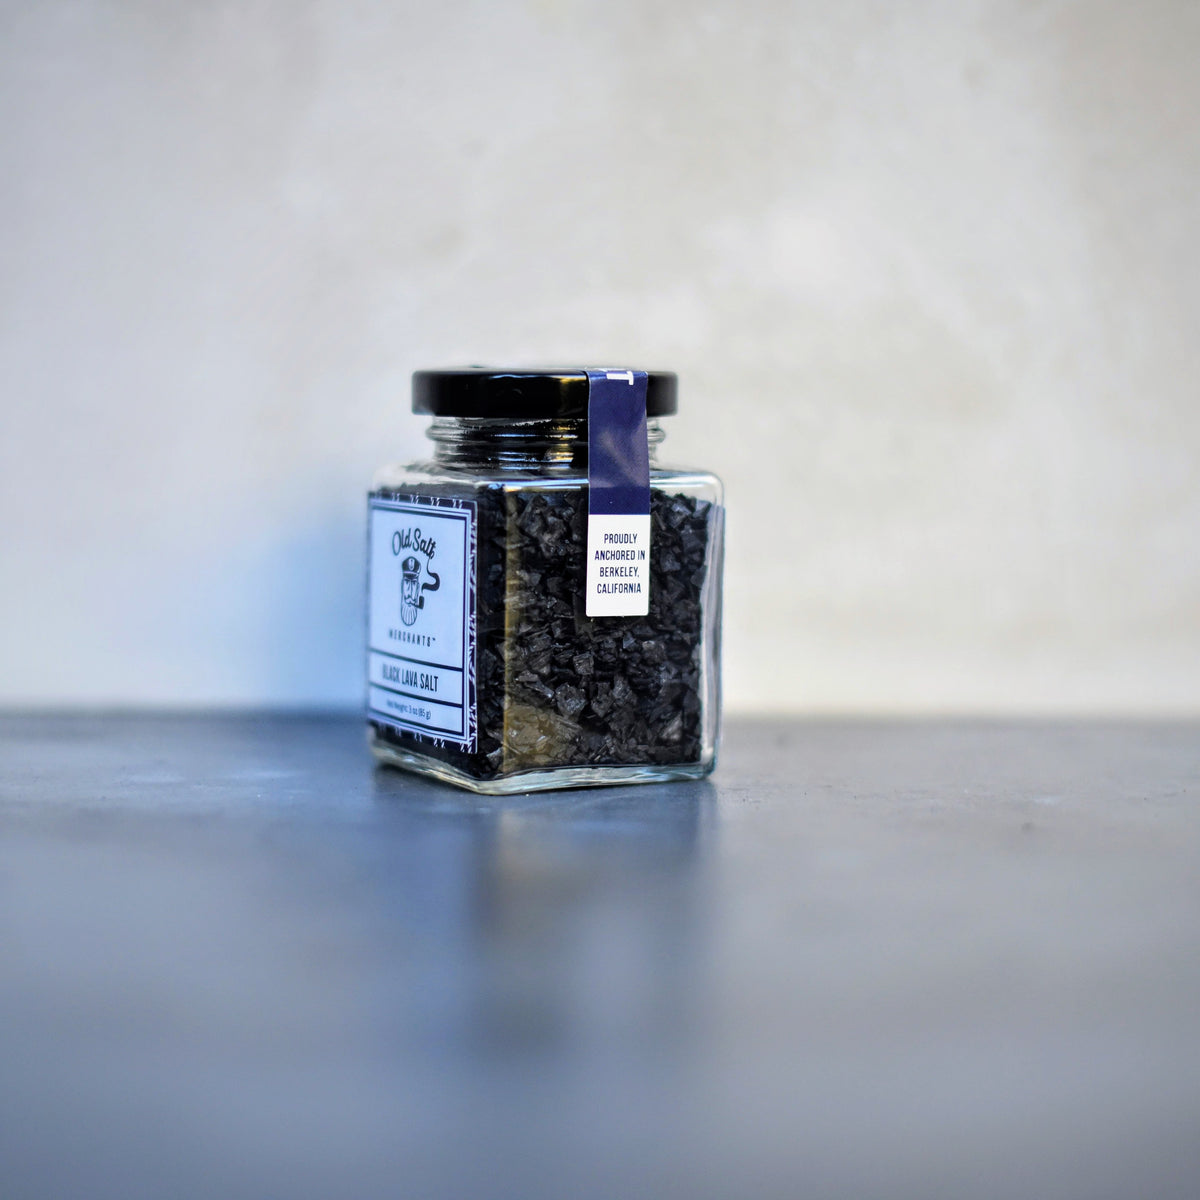 Black Lava Salt exclusive at Tastermonial